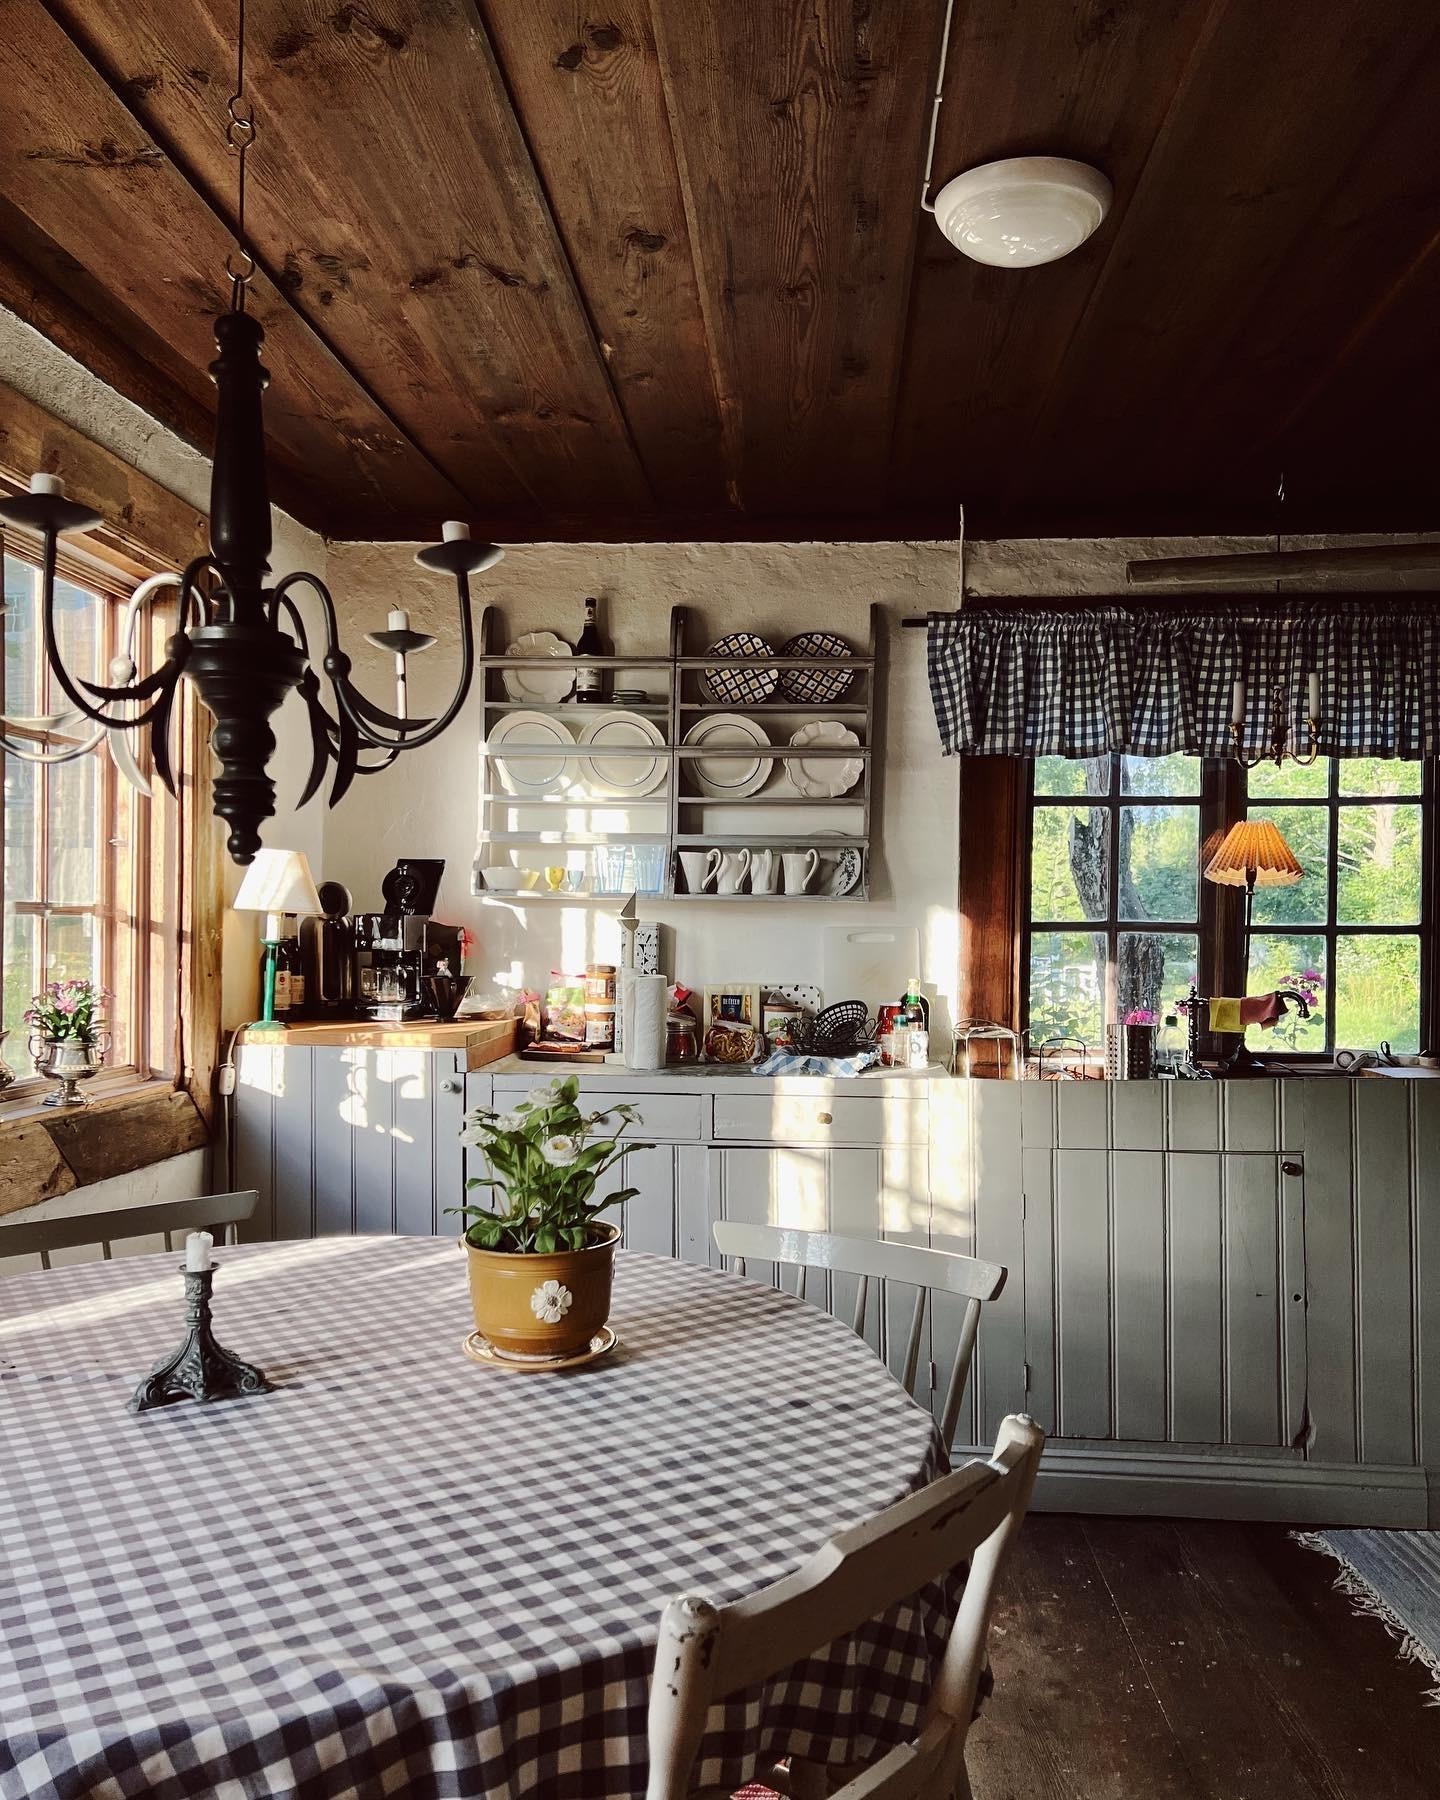 slowly days 💭
#schweden #alteshaus #vintageinterior #küche